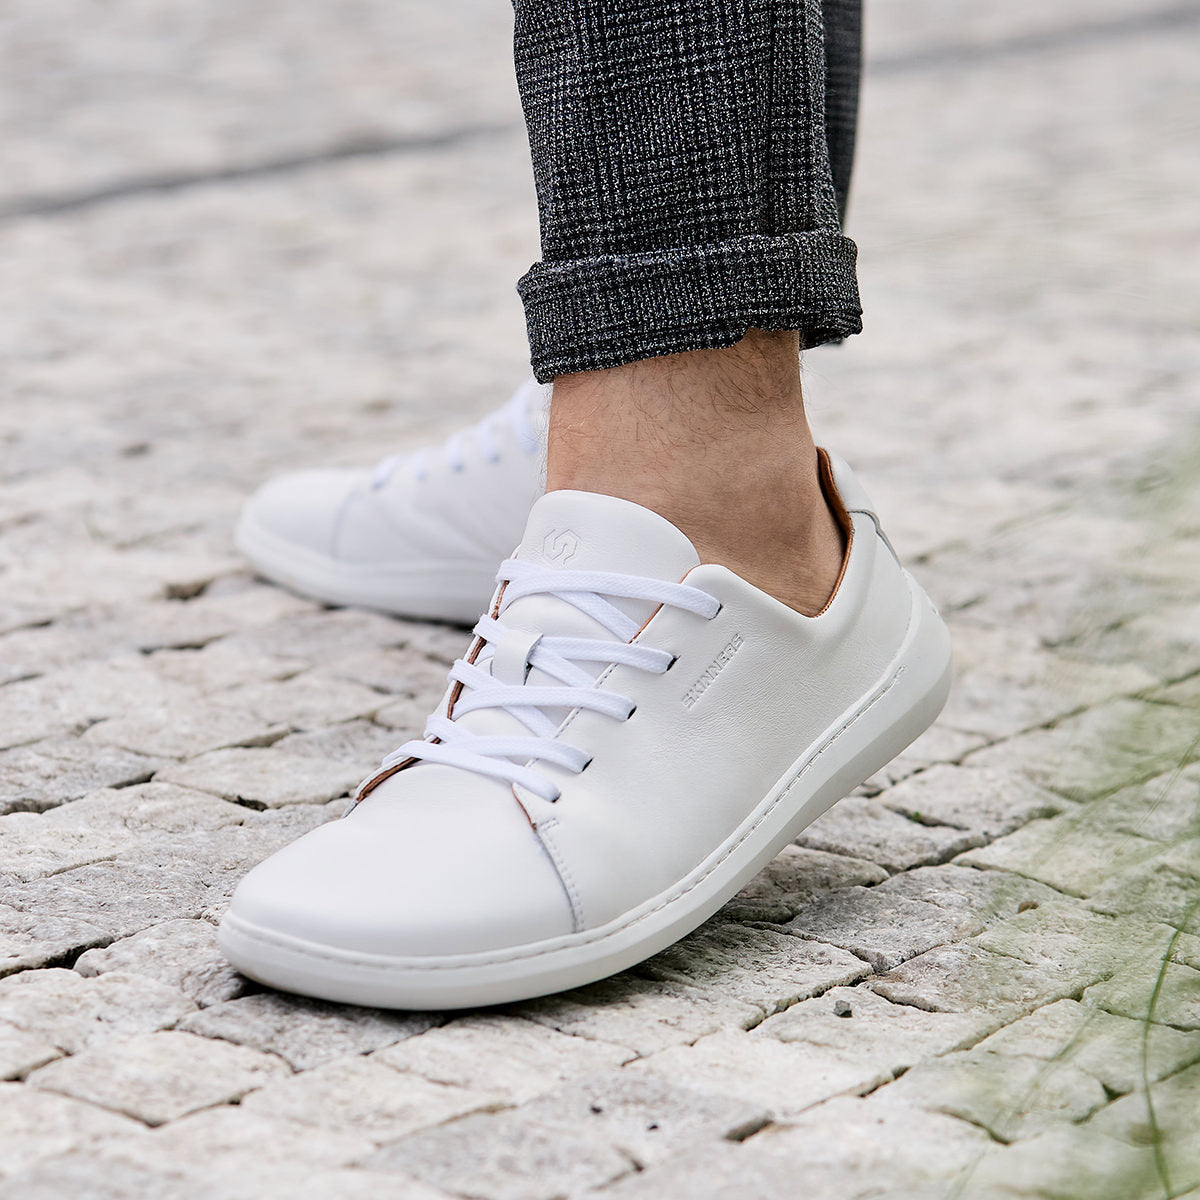 Mærkbare Walker barfods sneakers til kvinder og mænd i farven white / white, lifestyle